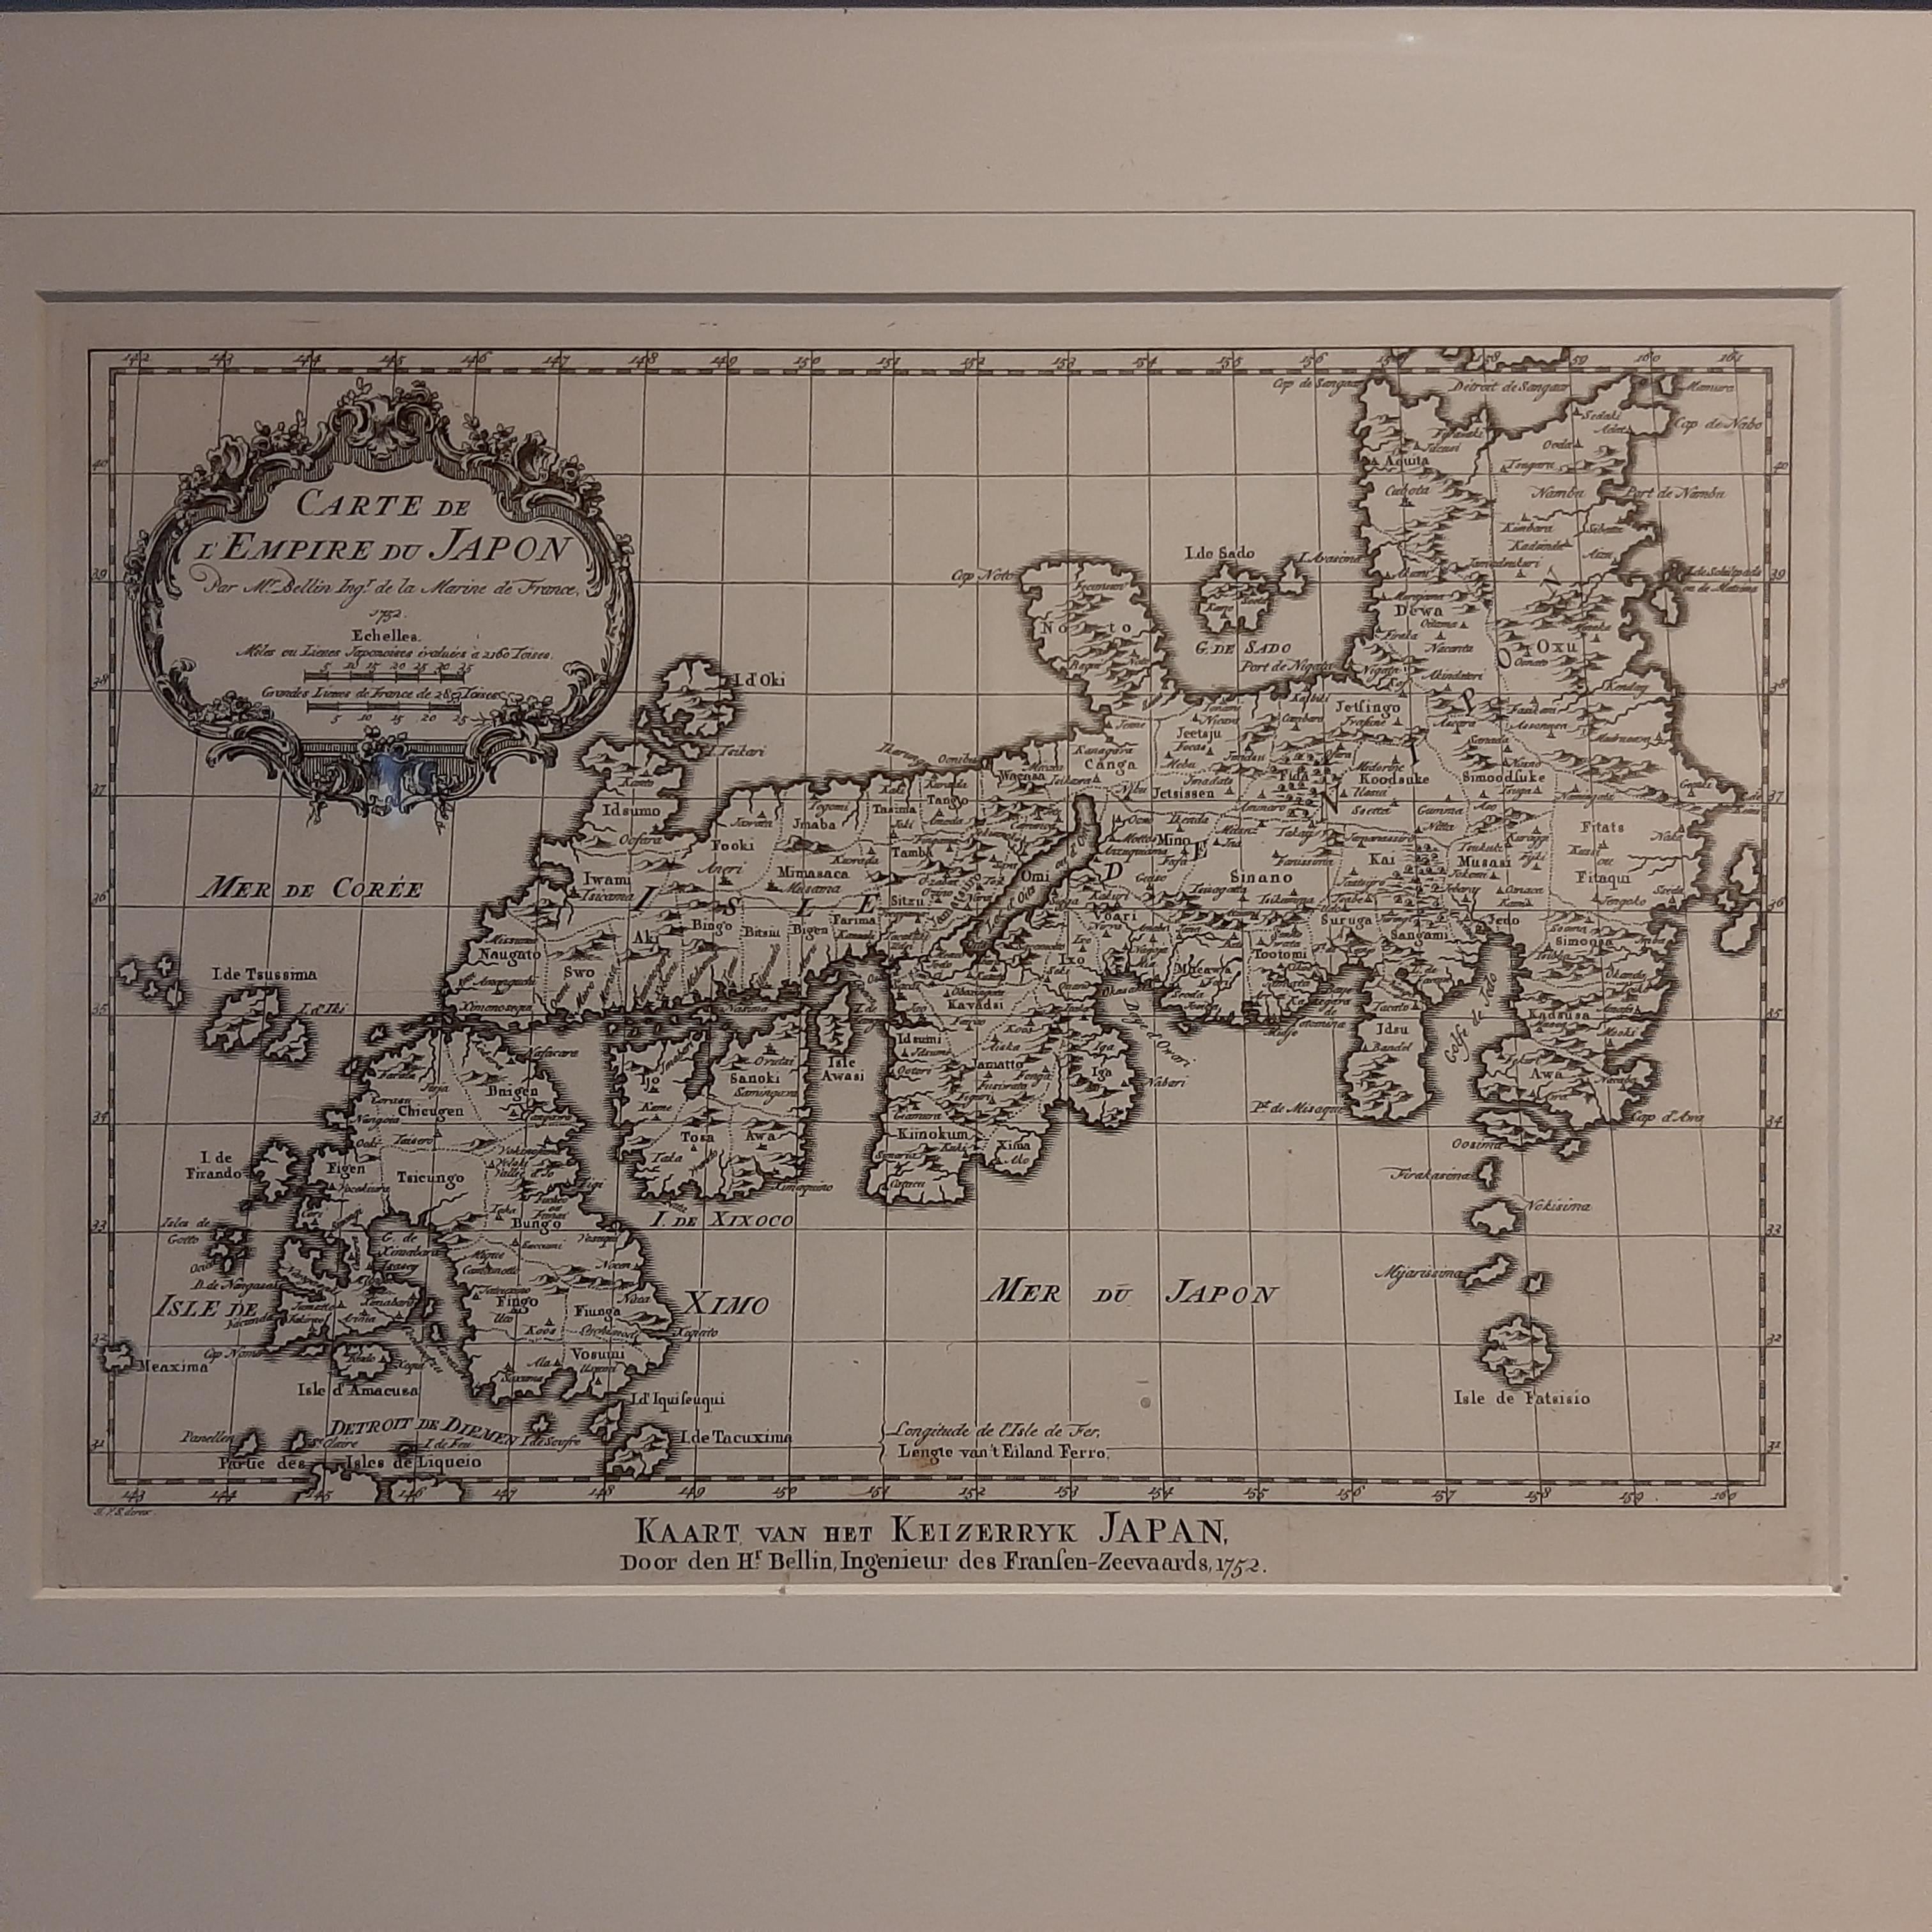 Antique map titled 'Carte de l'Empire du Japon - Kaart van het Keizerryk Japan'. Beautiful map of Japan. This map originates from volume 14 of a Dutch edition of 'Histoire générale des voyages' published by P. de Hondt. Engraved by J. van Schley